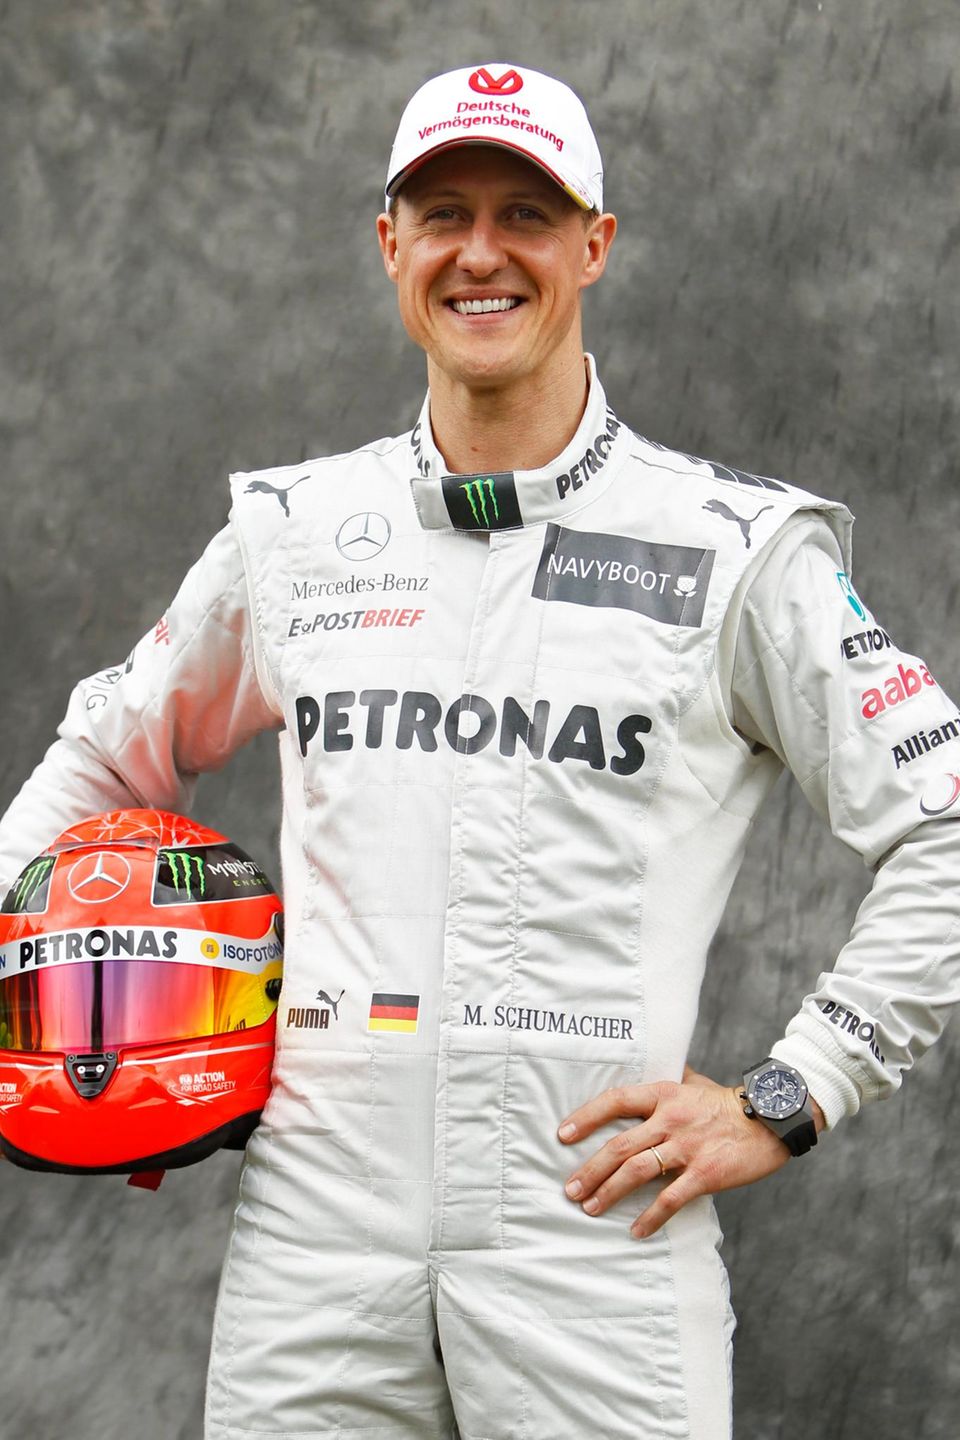 März 2012  Am 23. Dezember 2009 gibt Michael Schumacher sein Comeback in der Formel 1 bekannt. 2010 stellt Mercedes sein neues Team, bestehend aus Schumacher und Nico Rosberg, vor. 2012 gibt er nach keinem einzigen Sieg für Mercedes sein endgültiges Ausscheiden aus der Formel 1 bekannt.